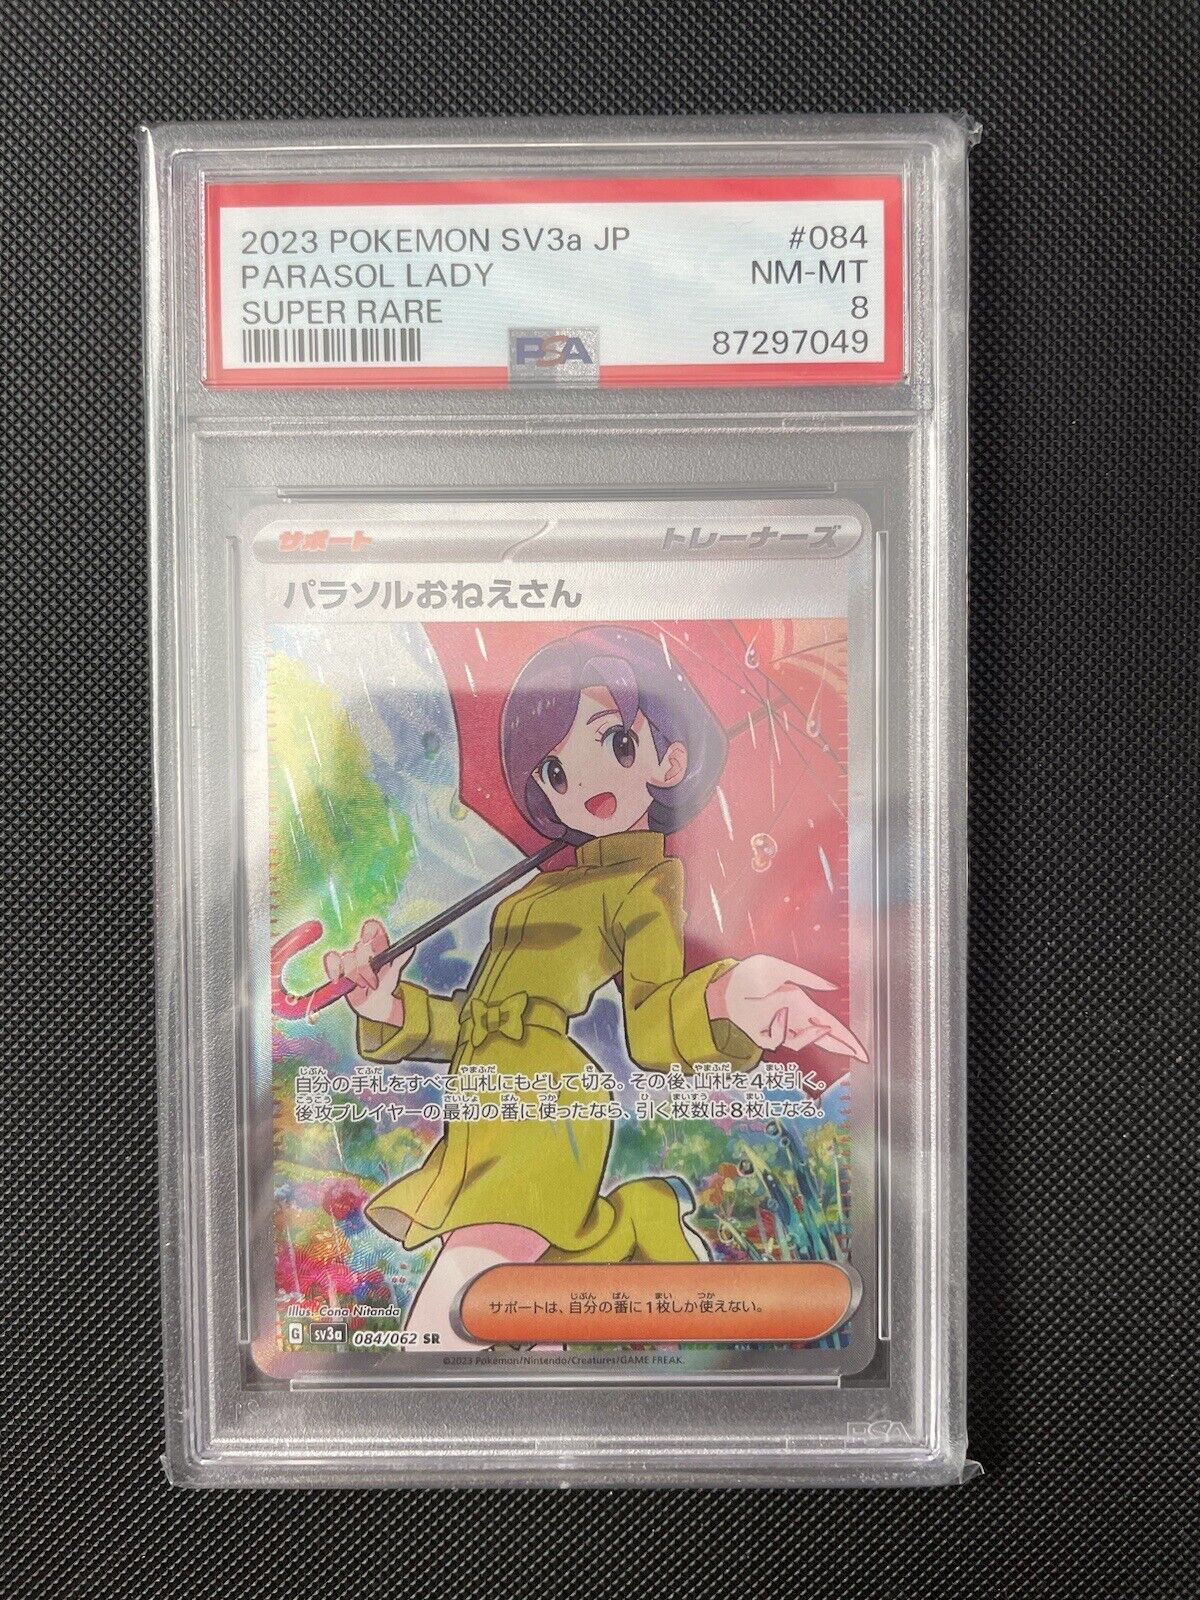 Pokemon Japanese Parasol Lady 084/062 SR Raging Surf SV3a PSA 8